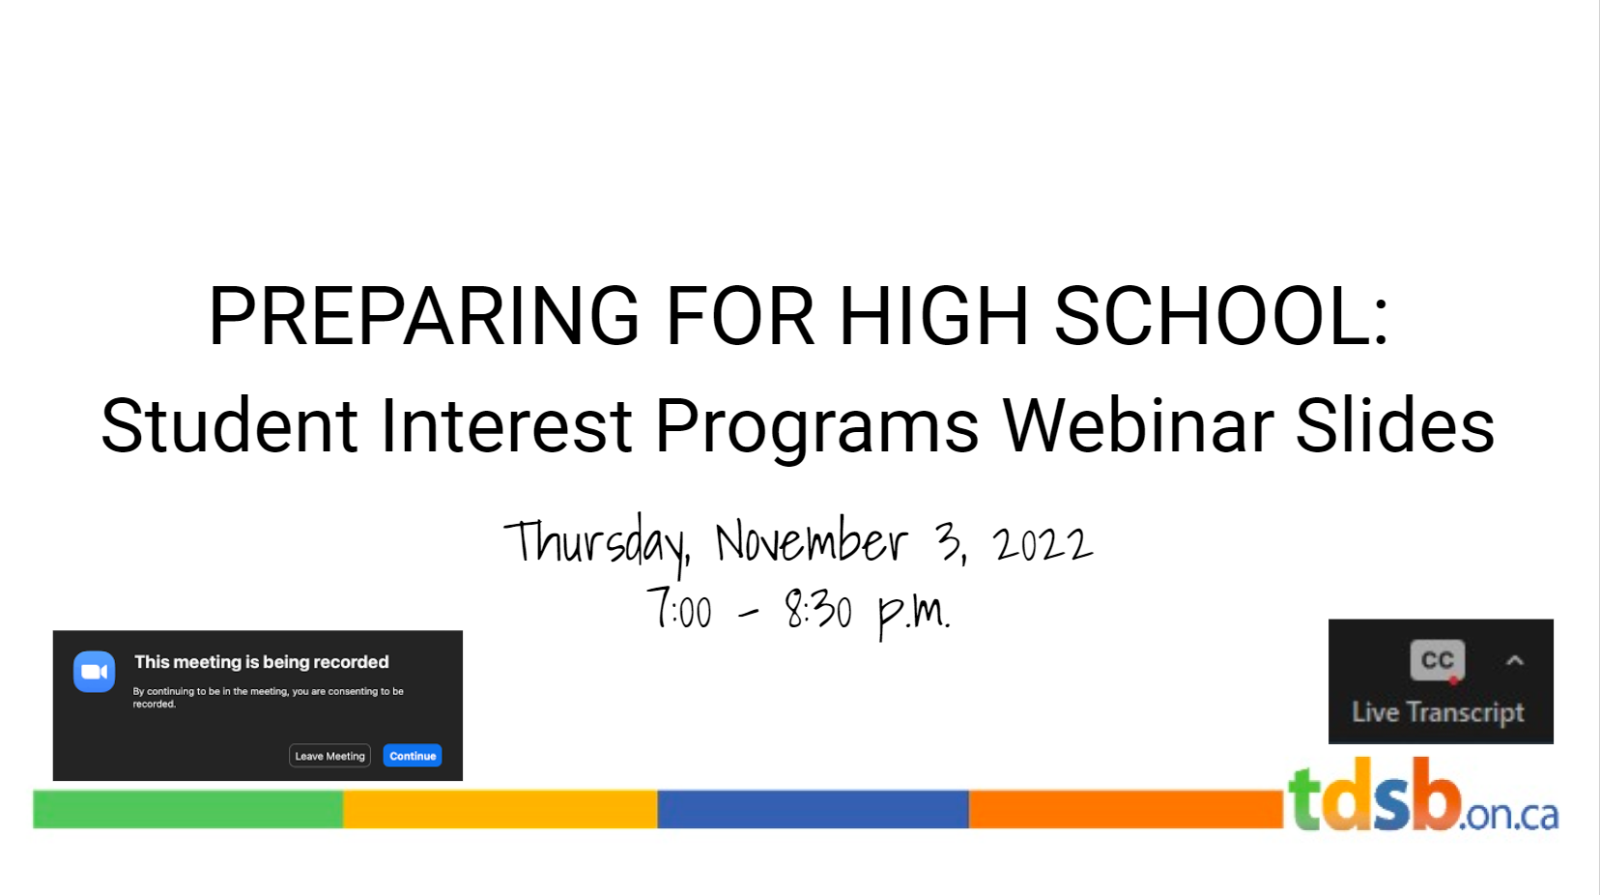 Student Interest Programs Webinar Slides 